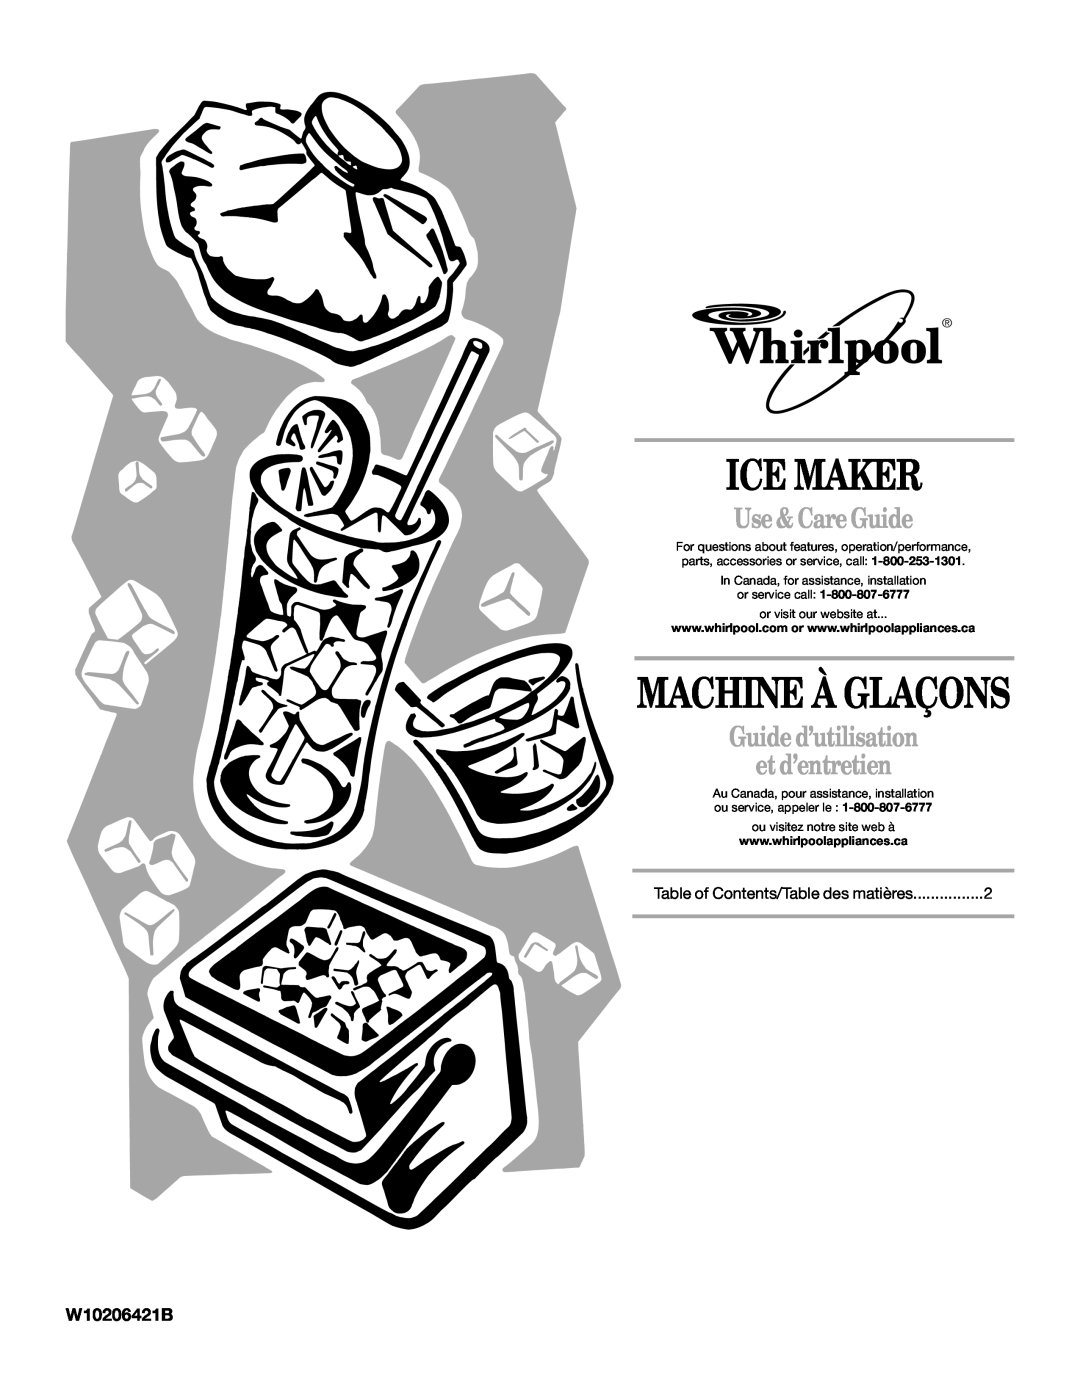 Whirlpool W10206421B manual Ice Maker, Machine À Glaçons, Use & Care Guide, Guide d’utilisation et d’entretien 